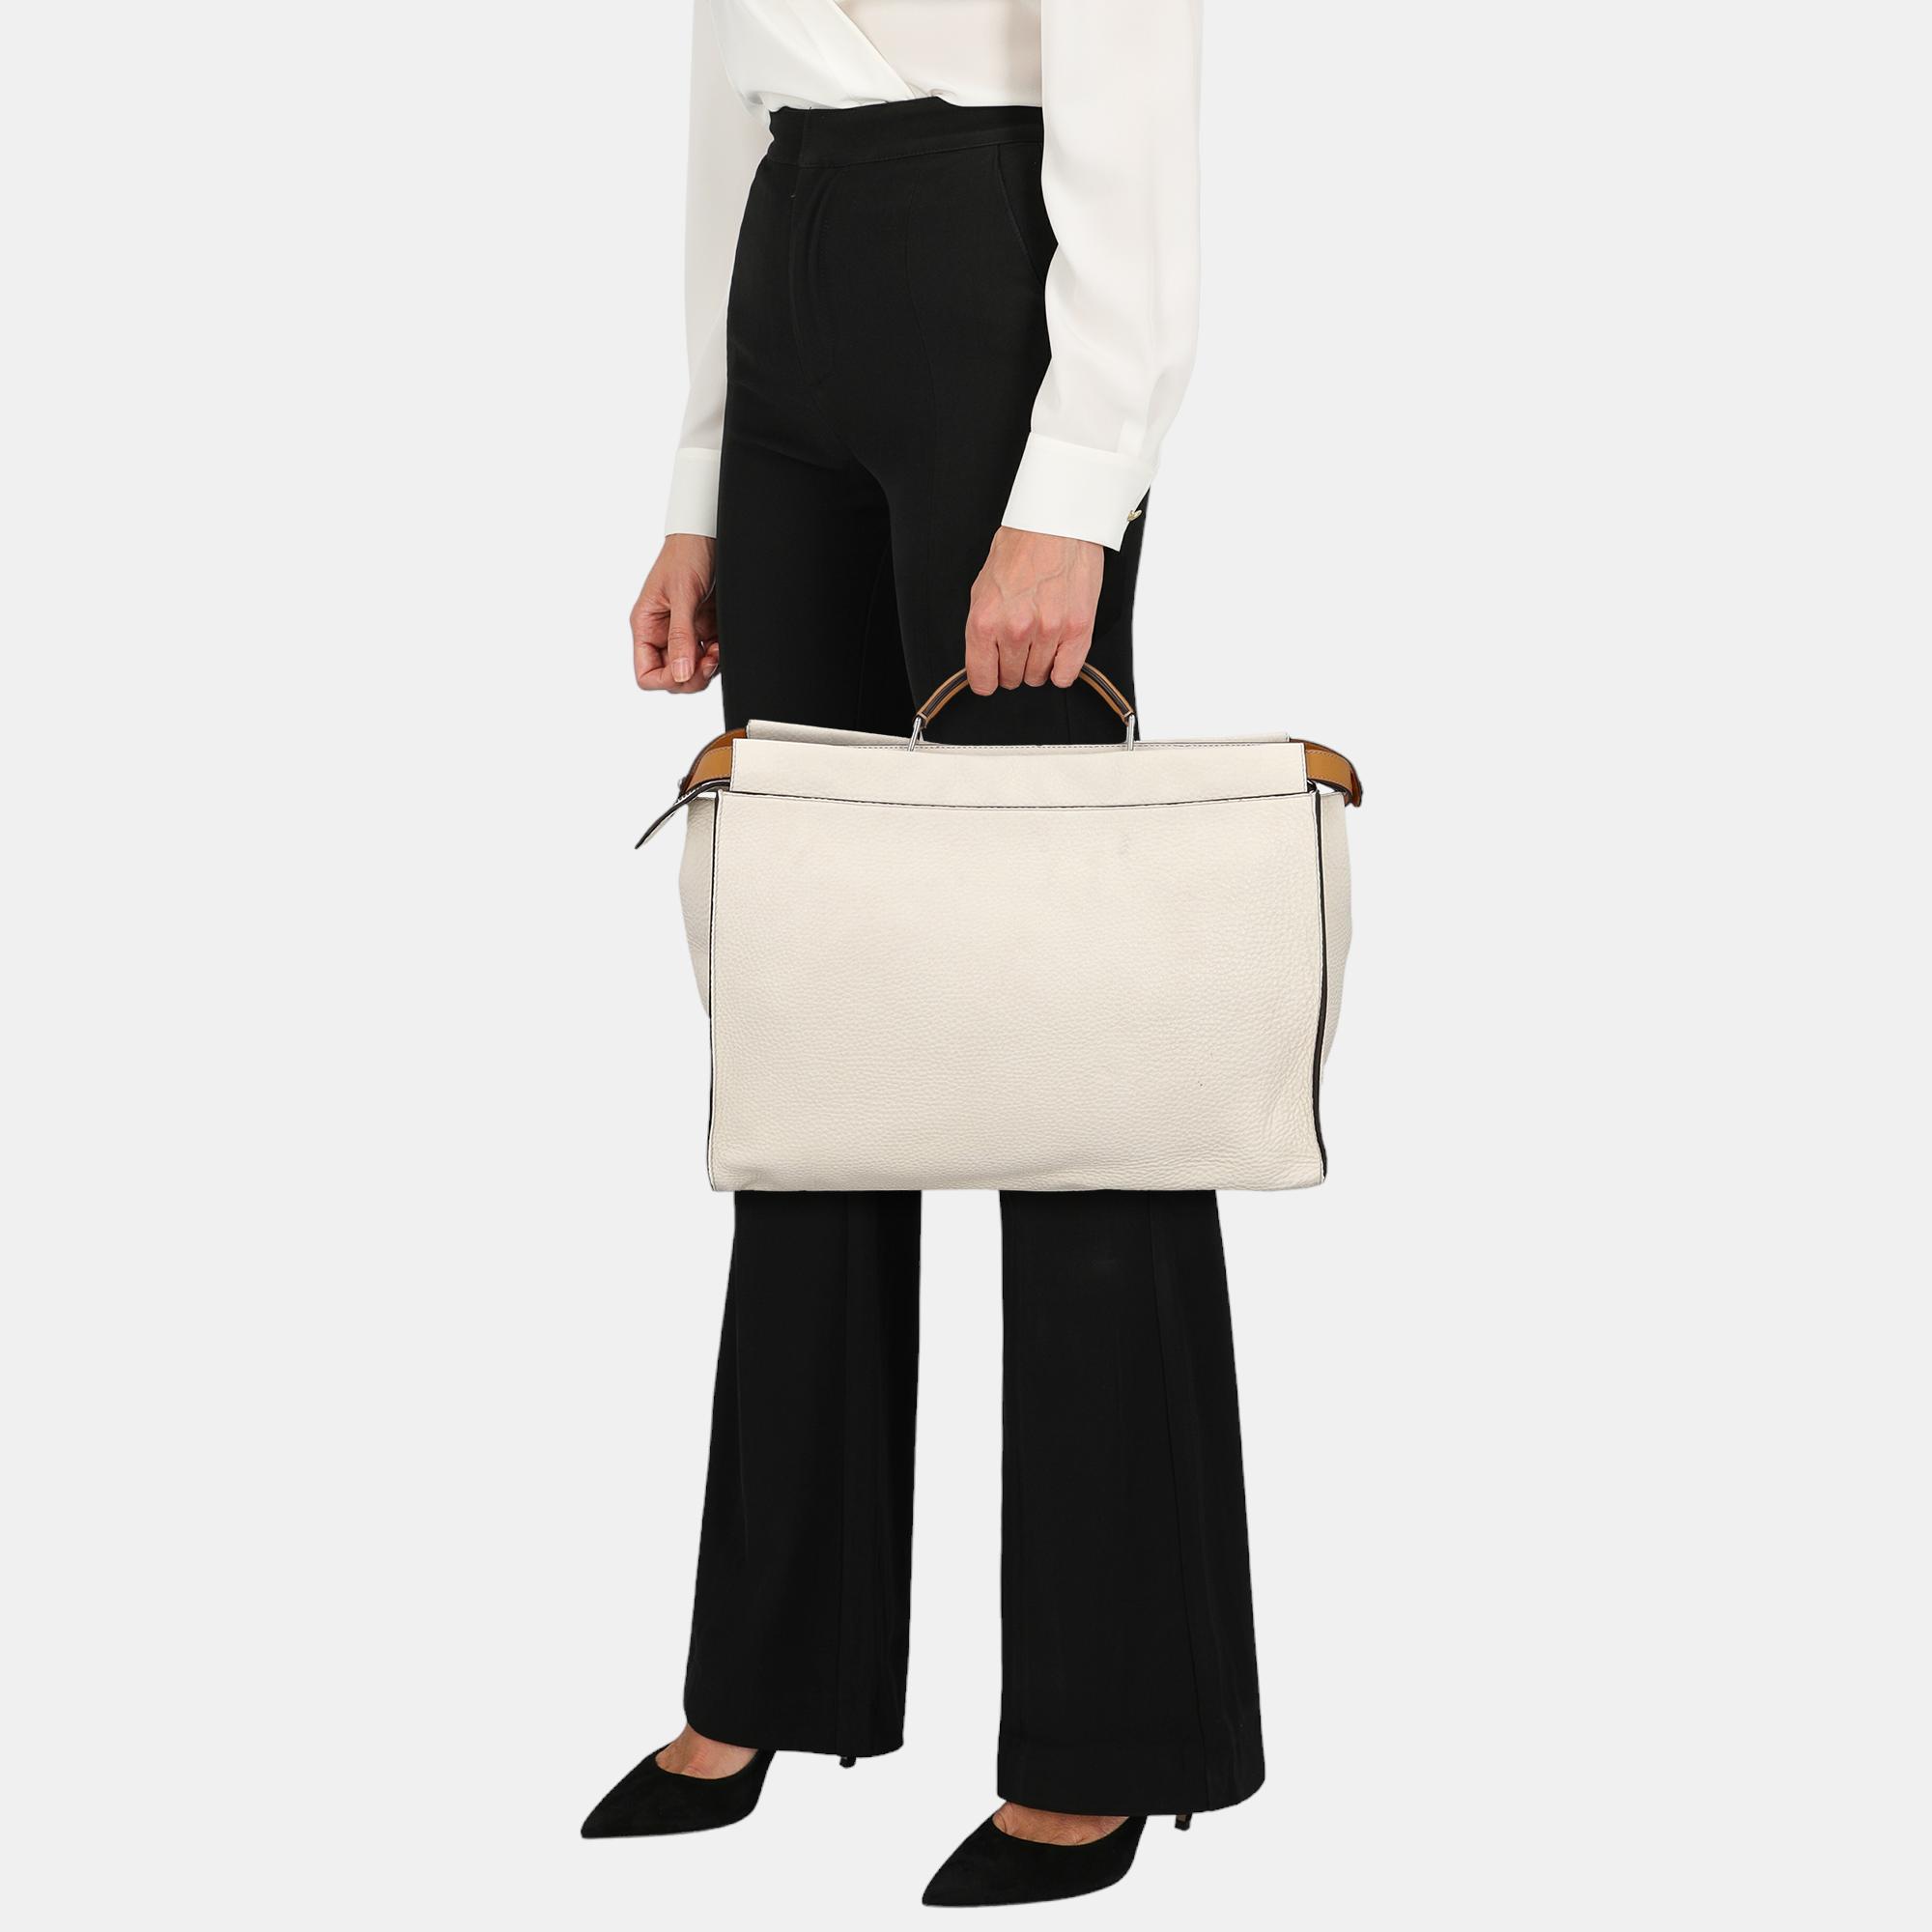 Fendi Peekaboo -  Women's Leather Tote Bag - White - One Size